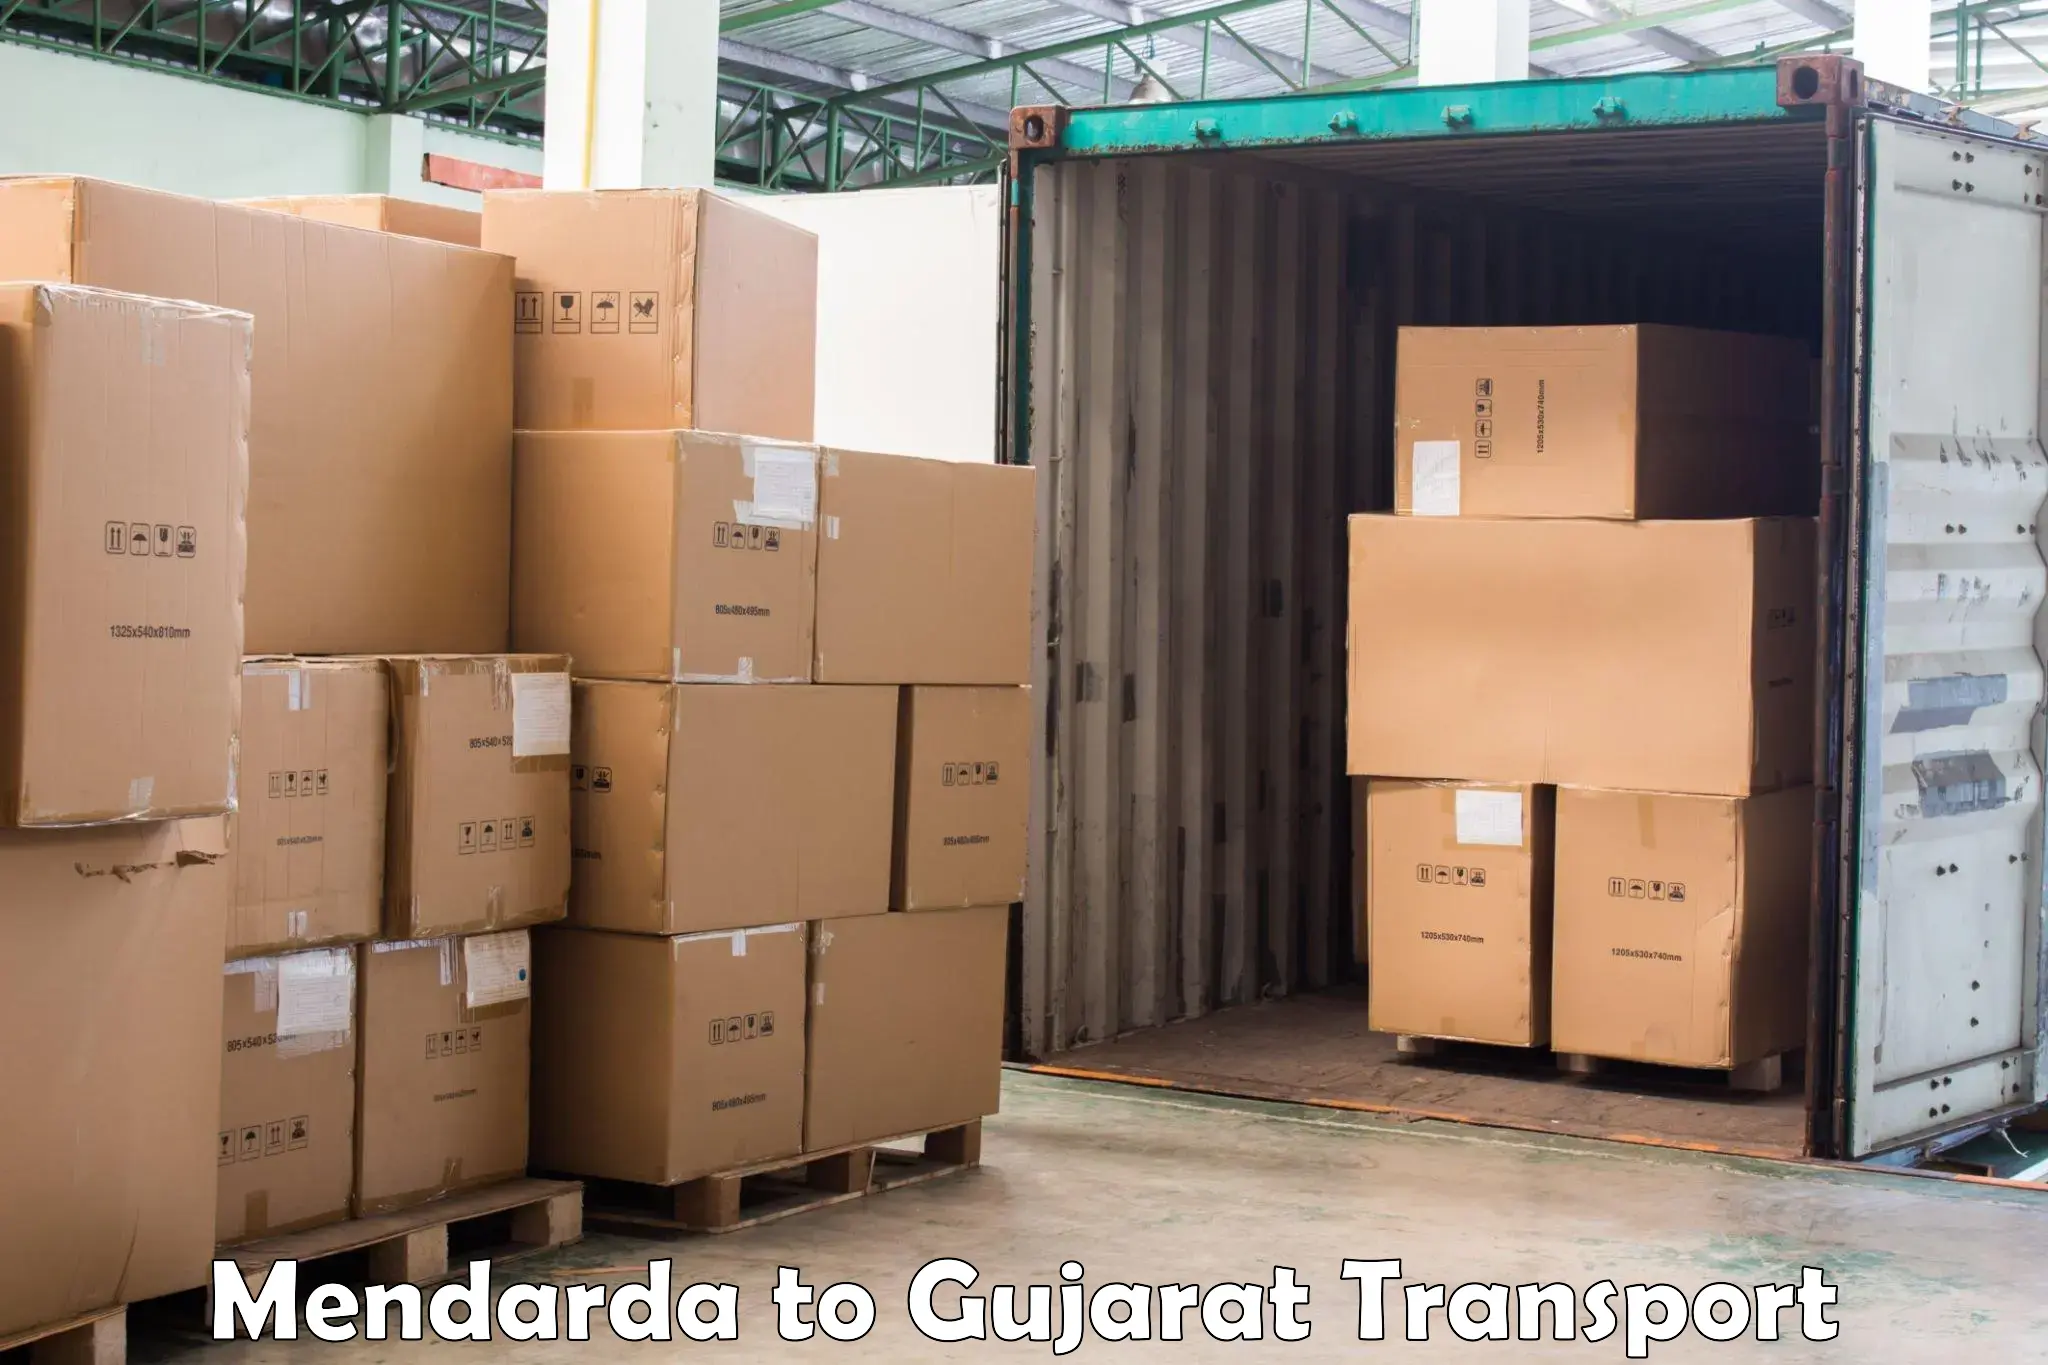 Transport in sharing Mendarda to Satlasana